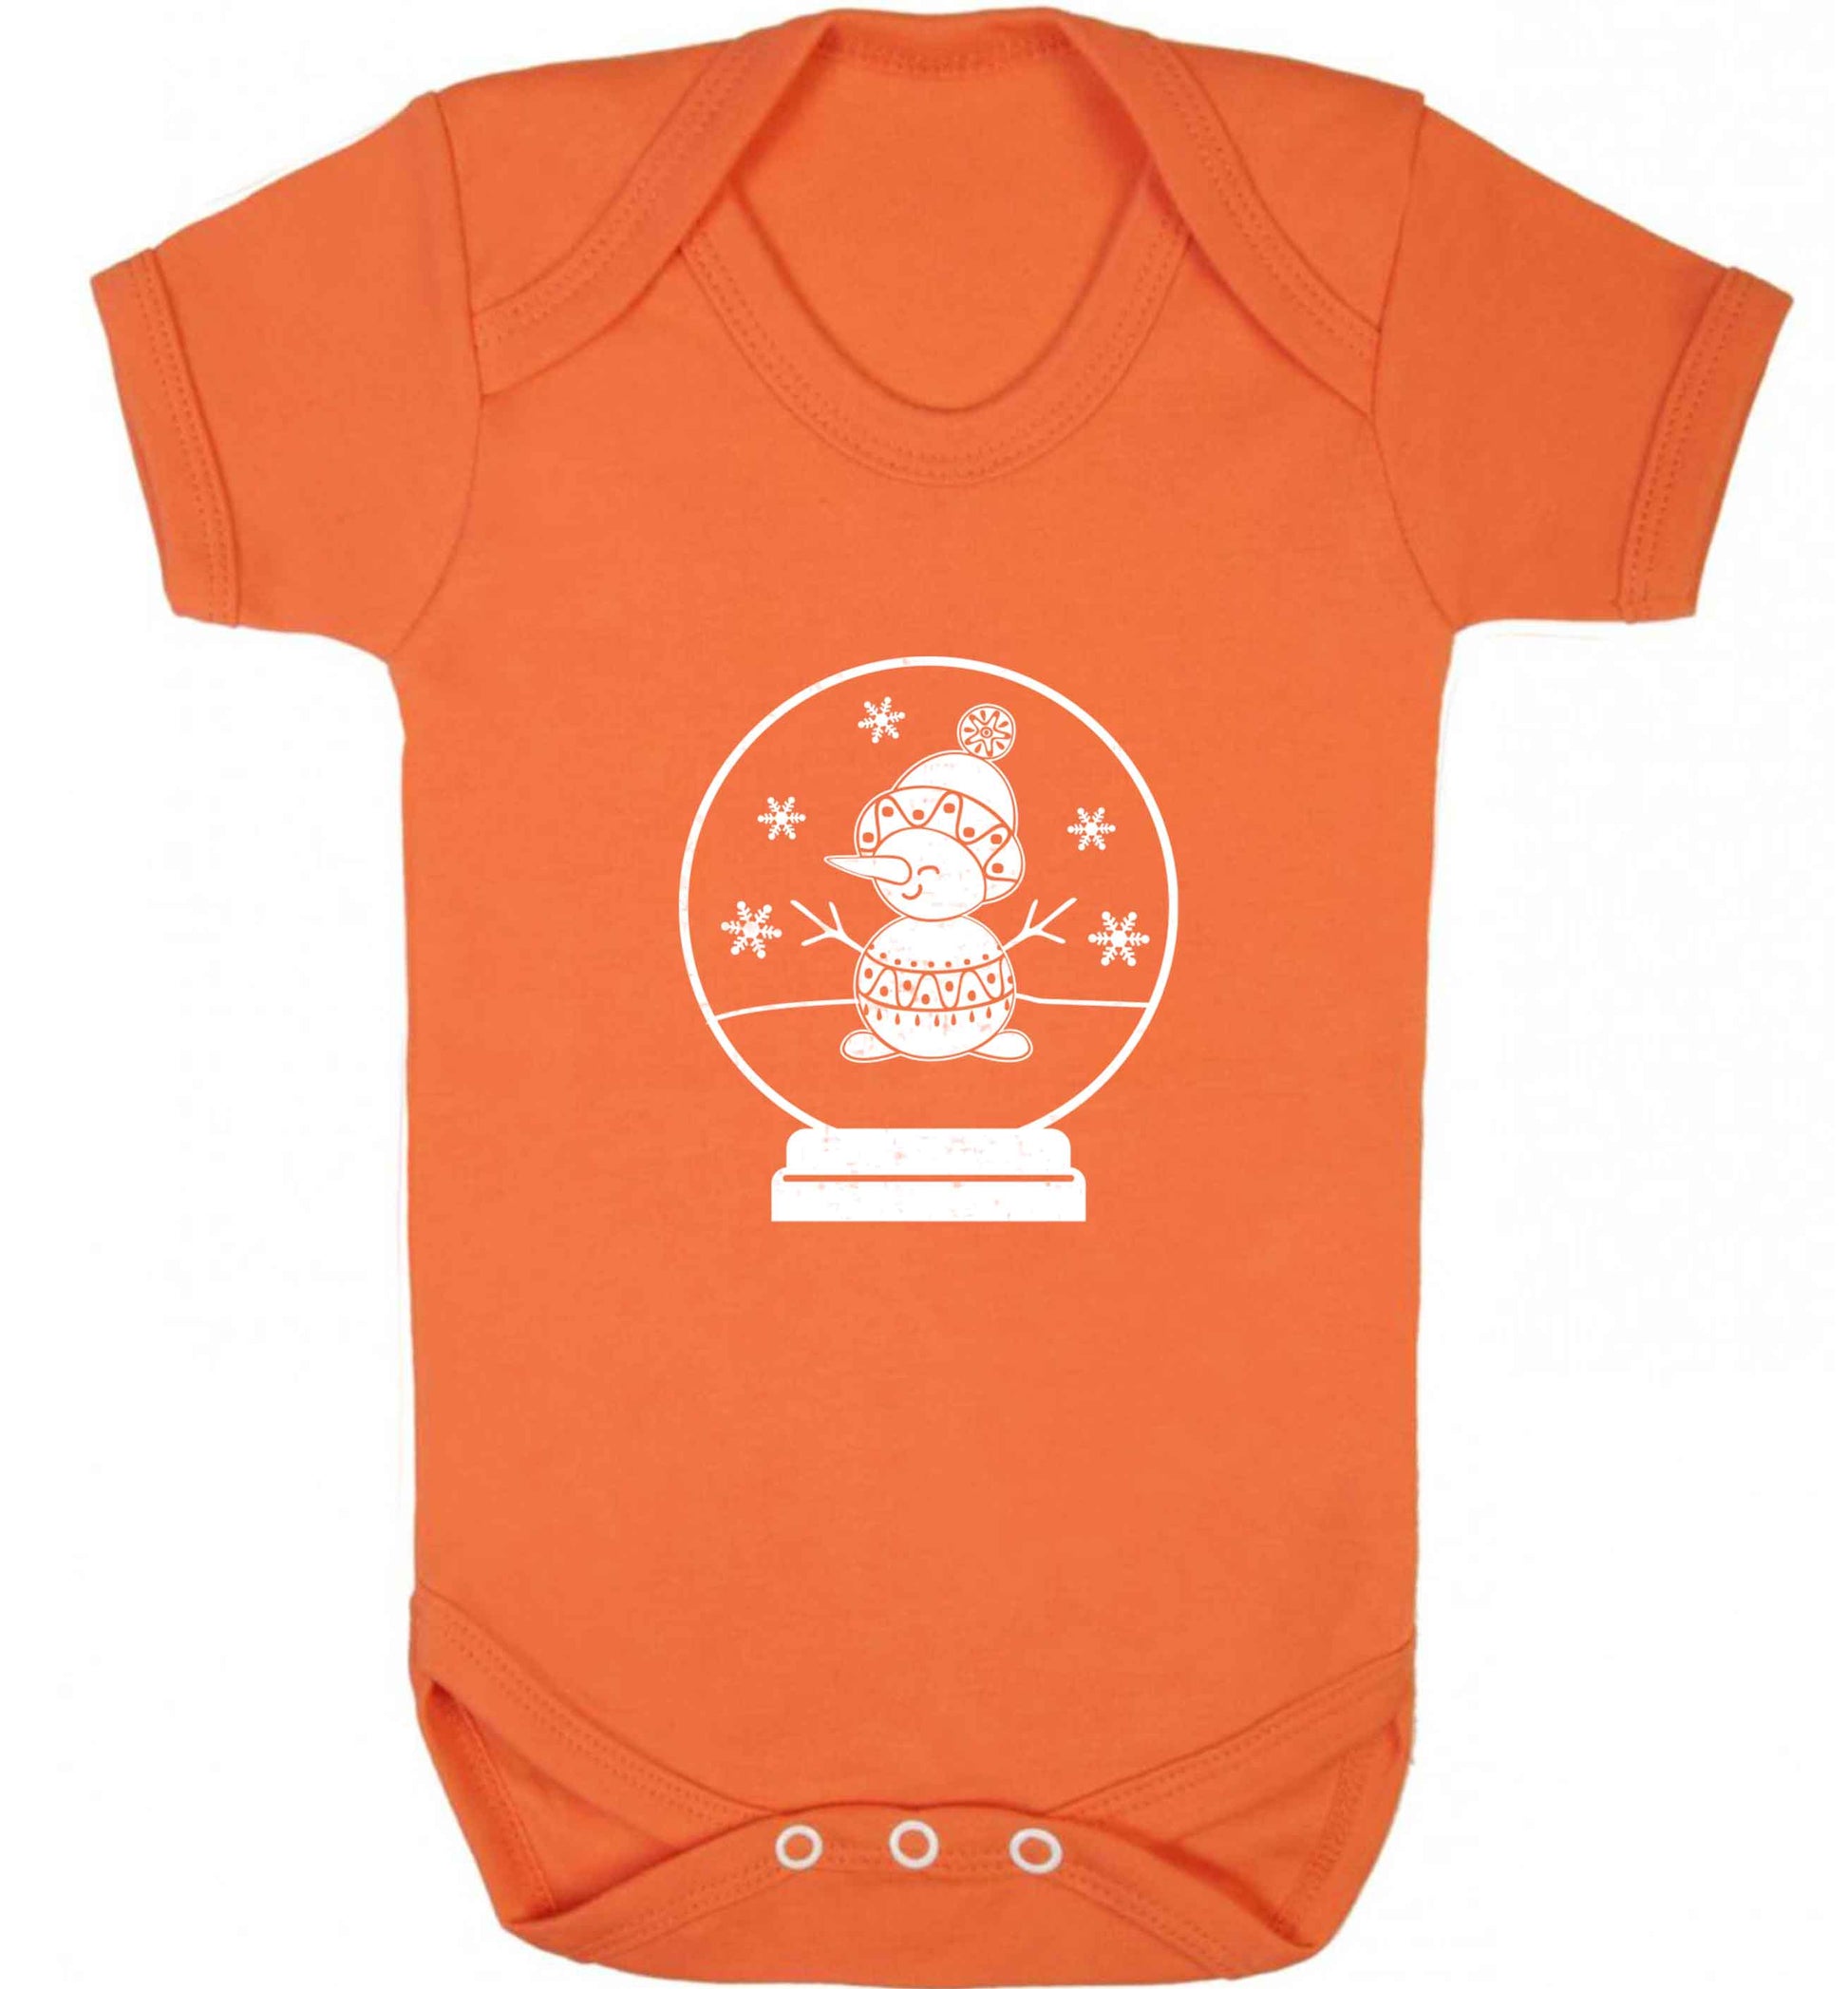 Snowman Snowglobe baby vest orange 18-24 months